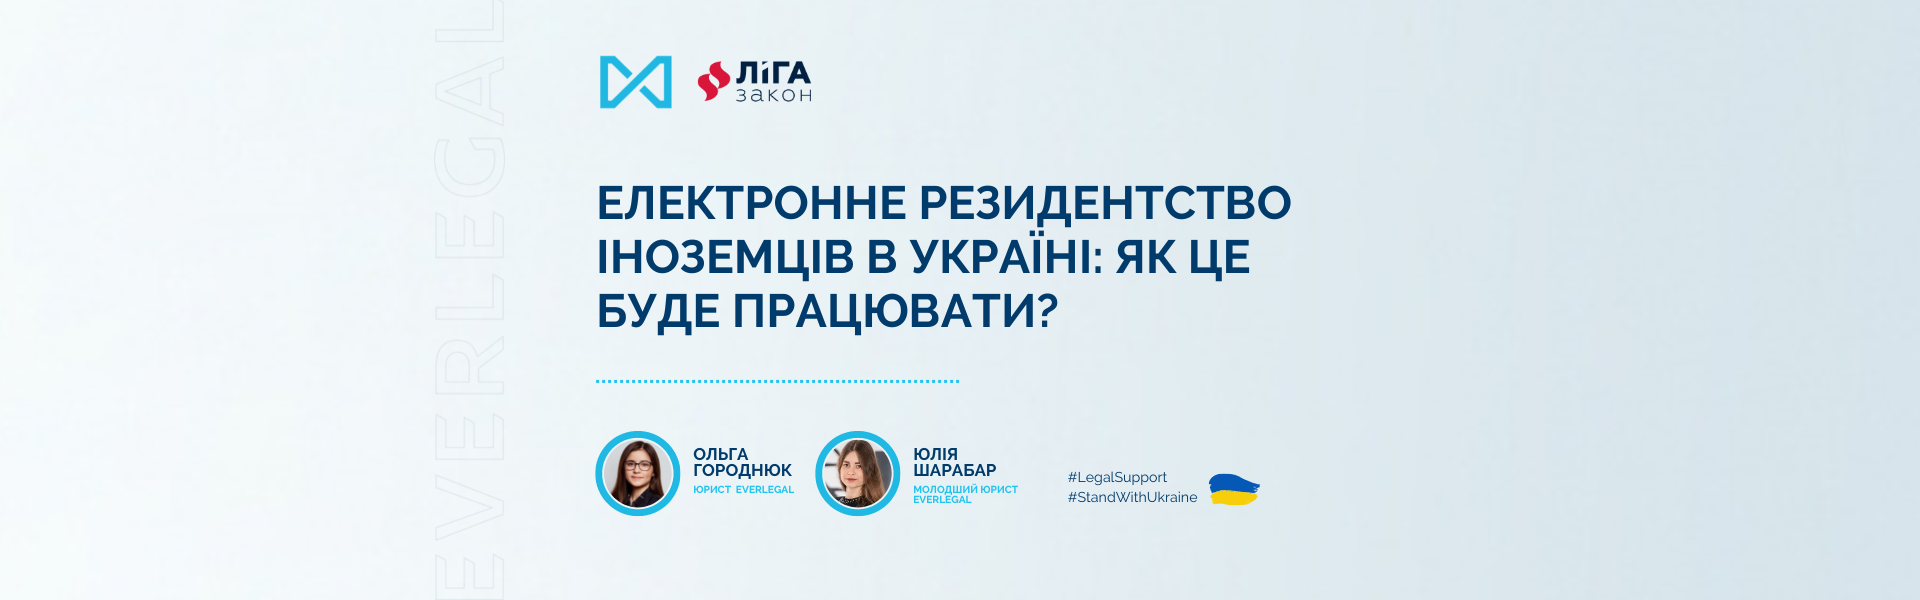 Електронне резидентство іноземців в Україні: як це буде працювати?